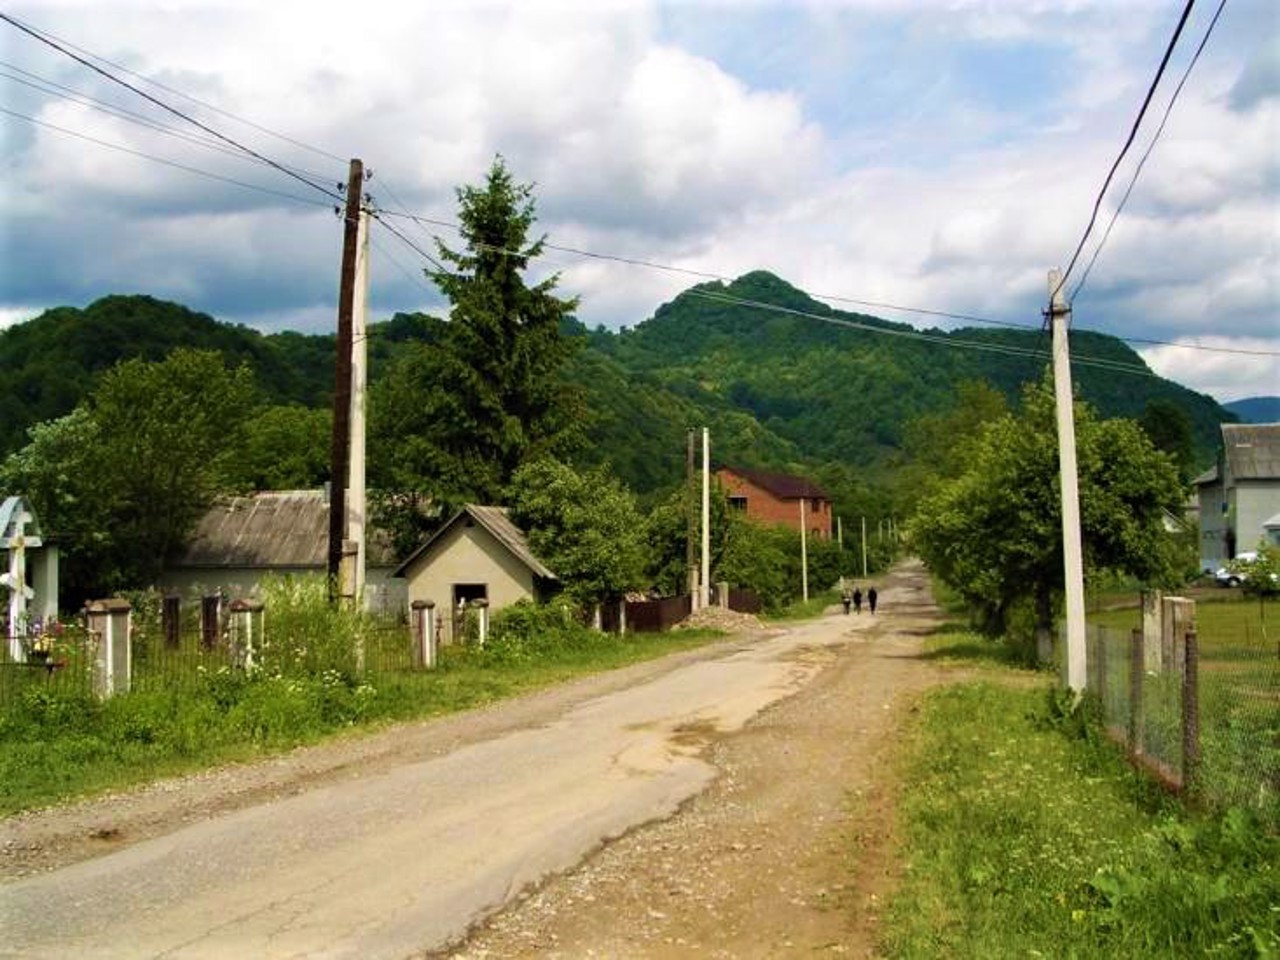 Село Малая Уголька